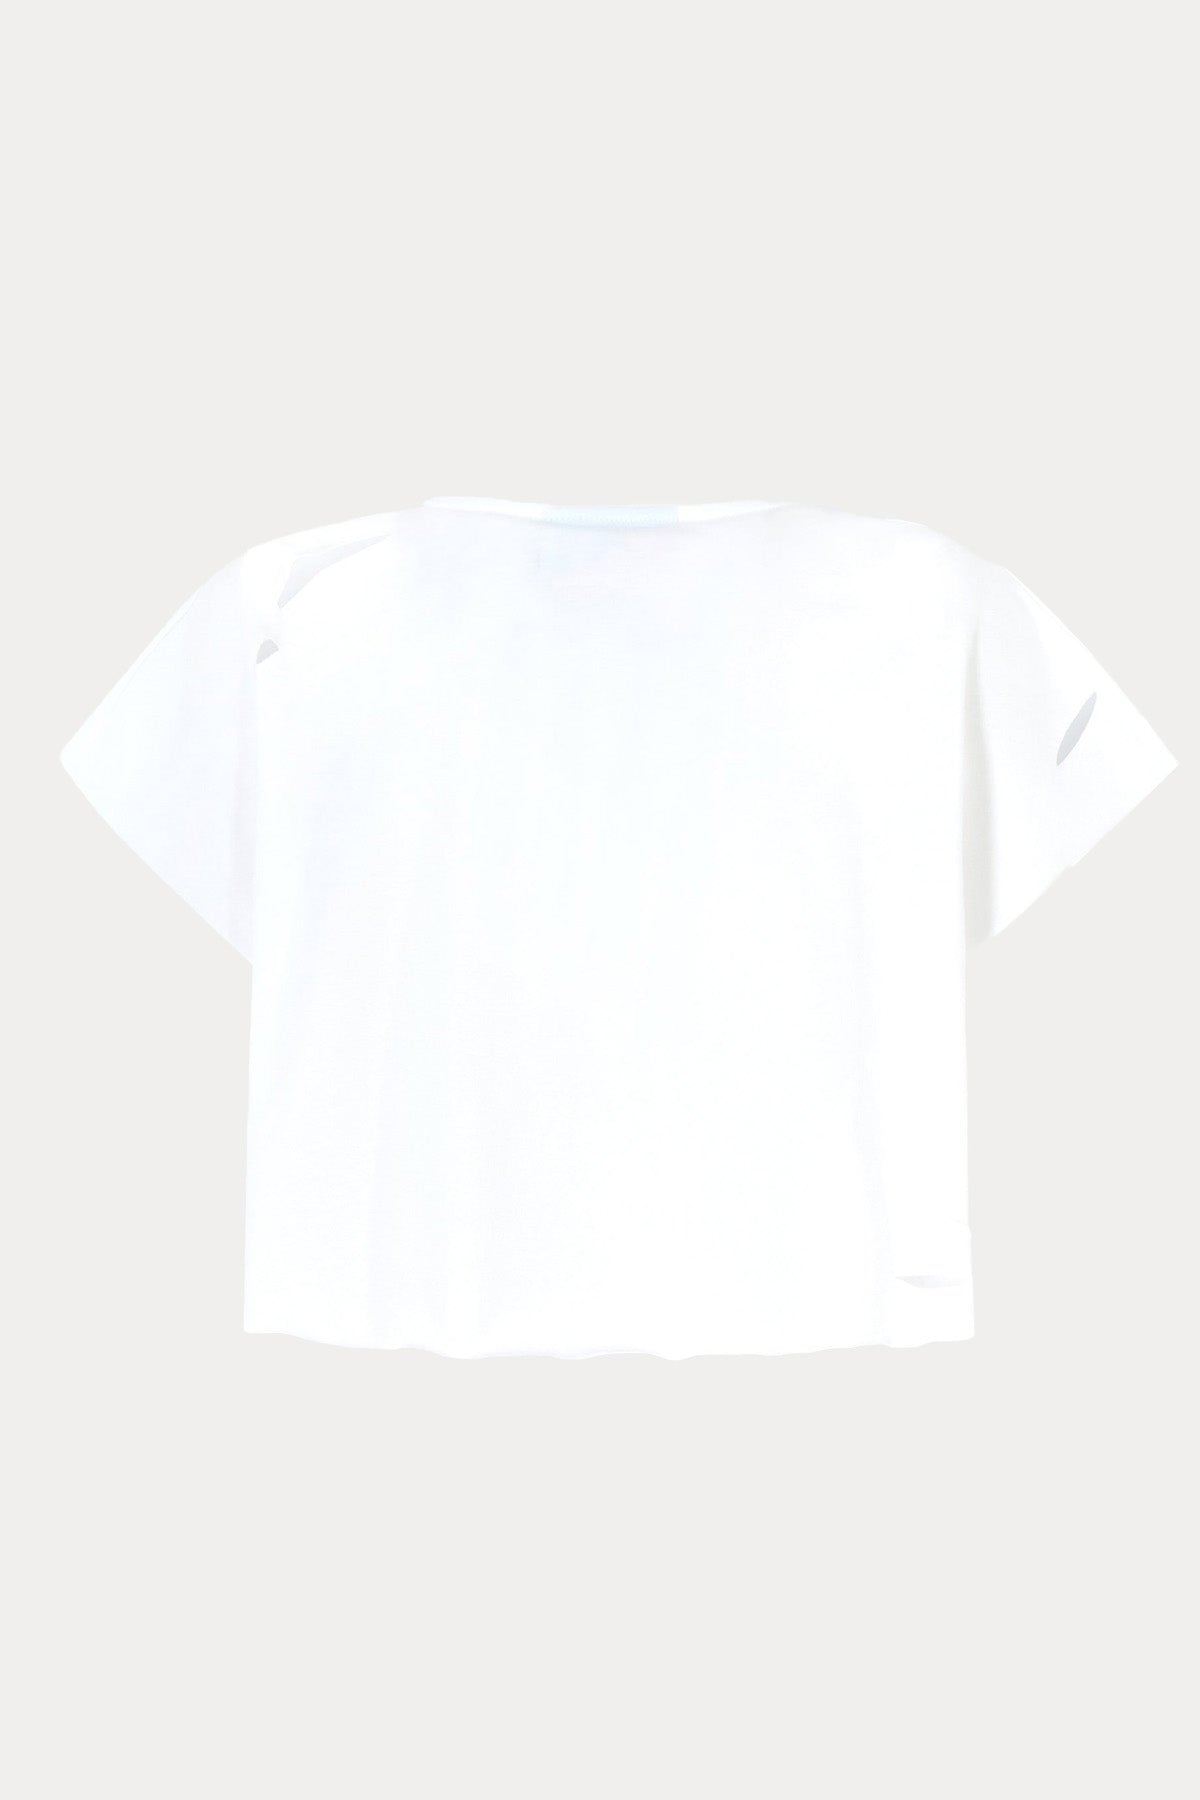 Chiara Ferragni Yuvarlak Yaka Yırtıklı Tasarım Logolu Crop T-shirt